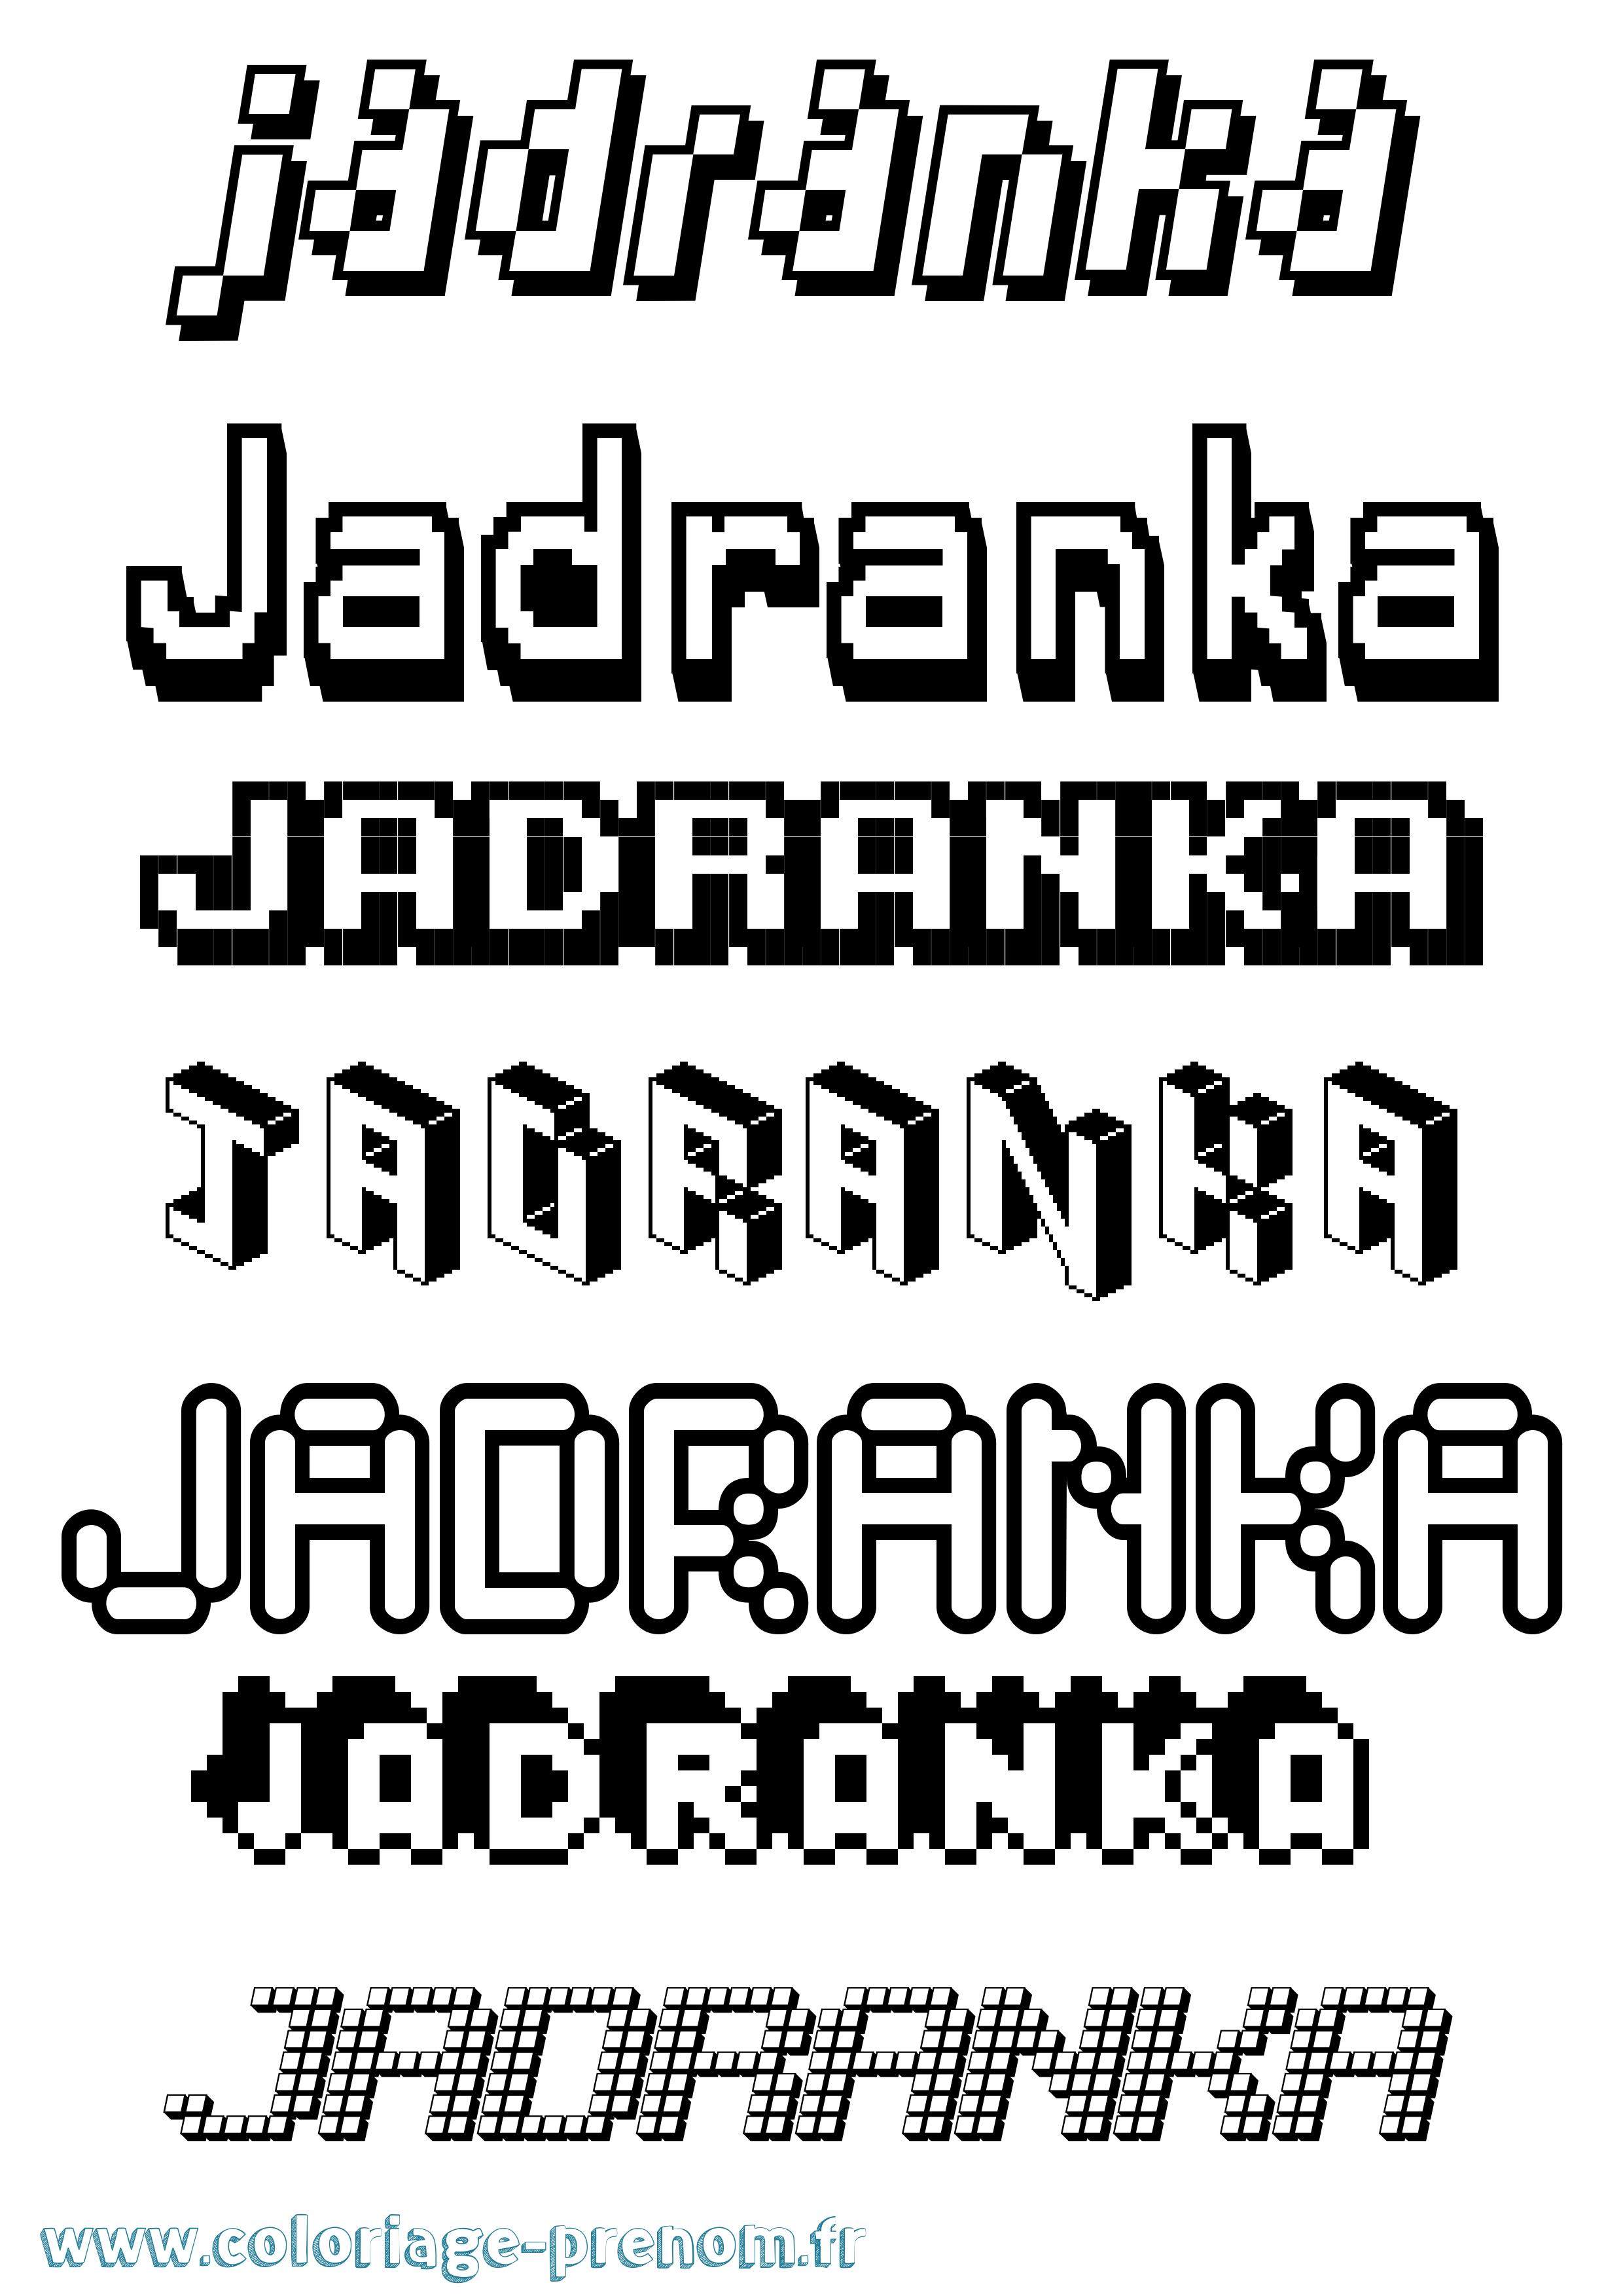 Coloriage prénom Jadranka Pixel